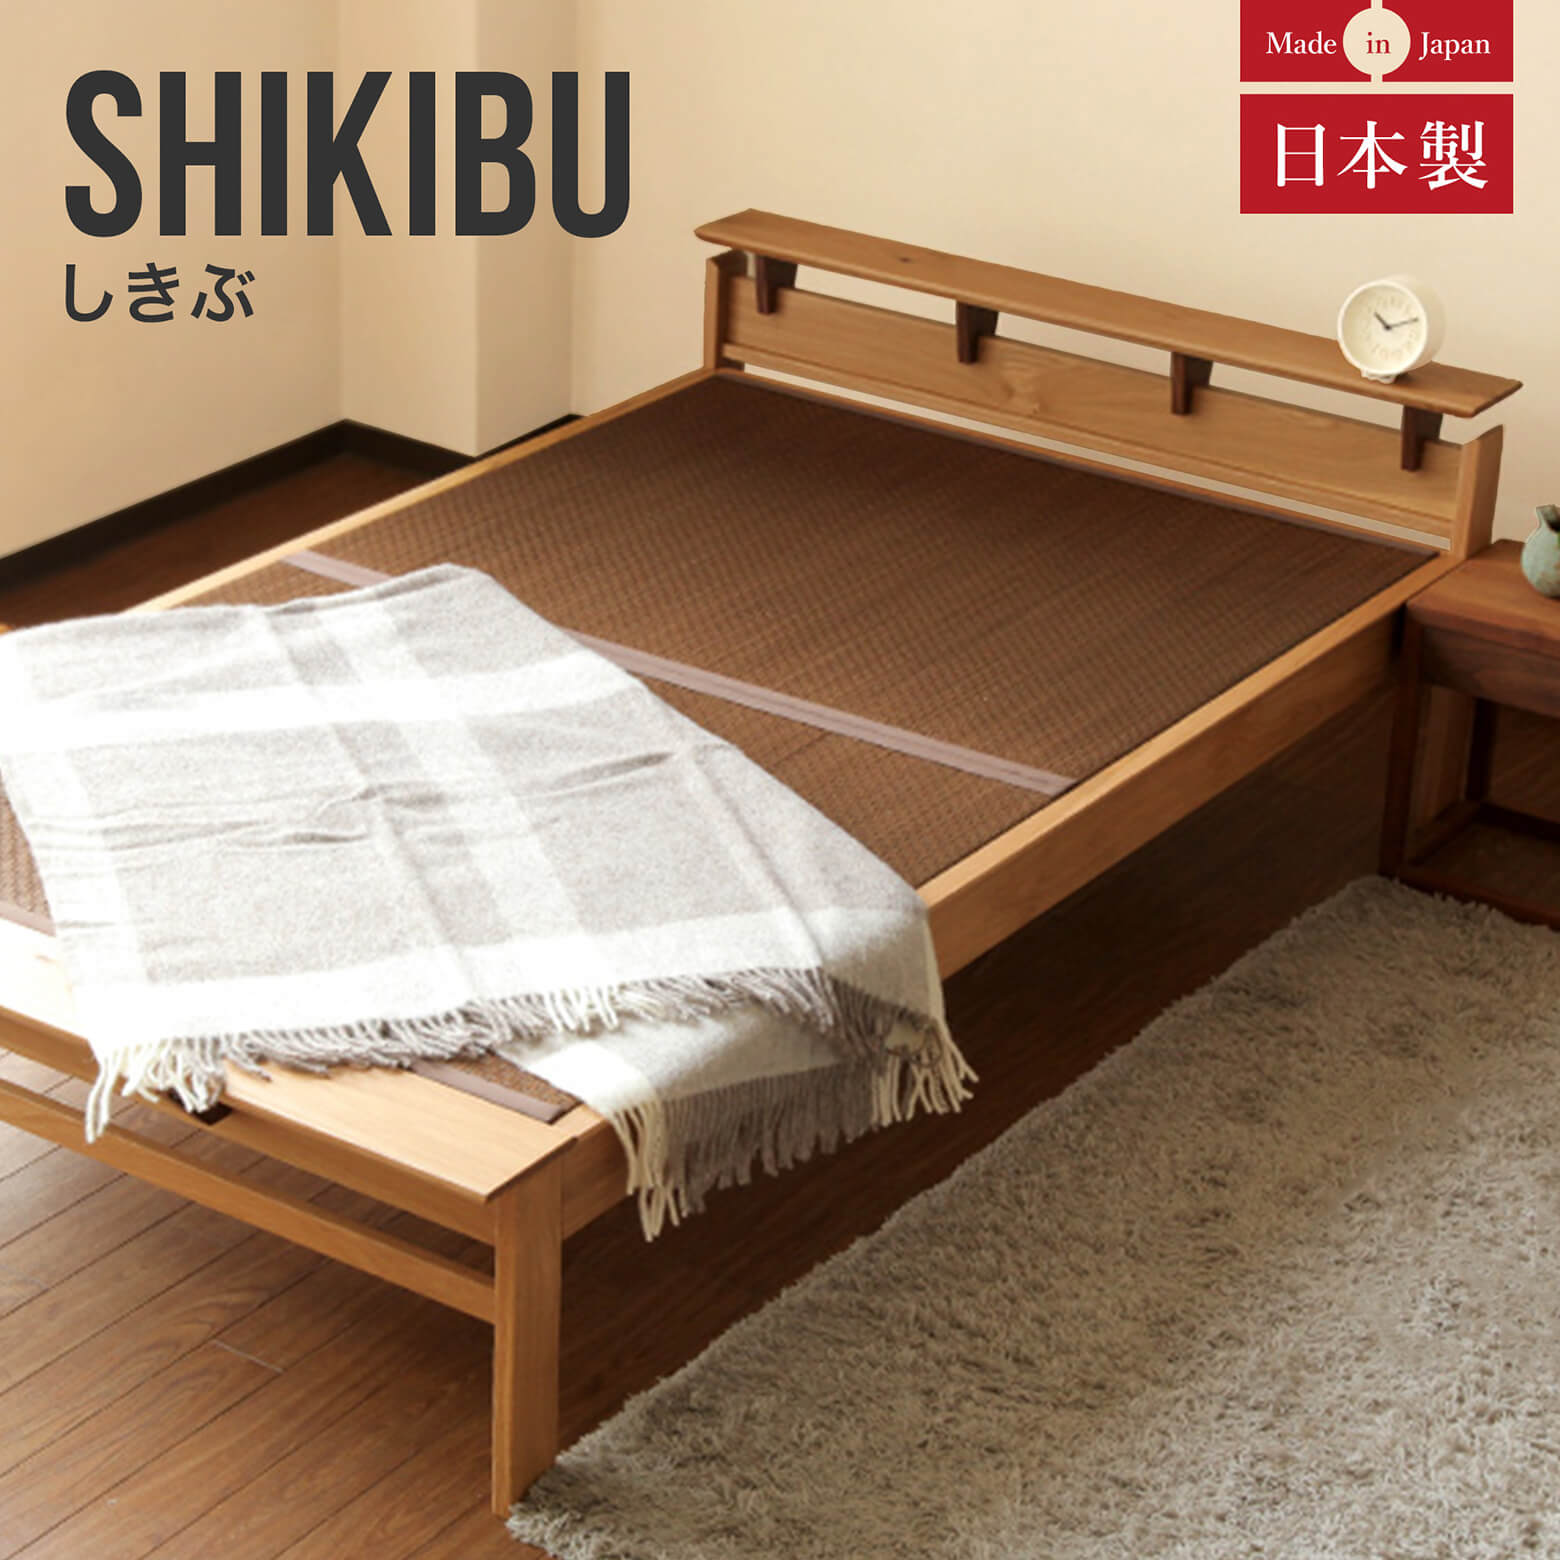 ダブルサイズ】しきぶーshikibuー【畳ベッド】【組立設置付】 | 日本最大級のベッド専門店 ビーナスベッド